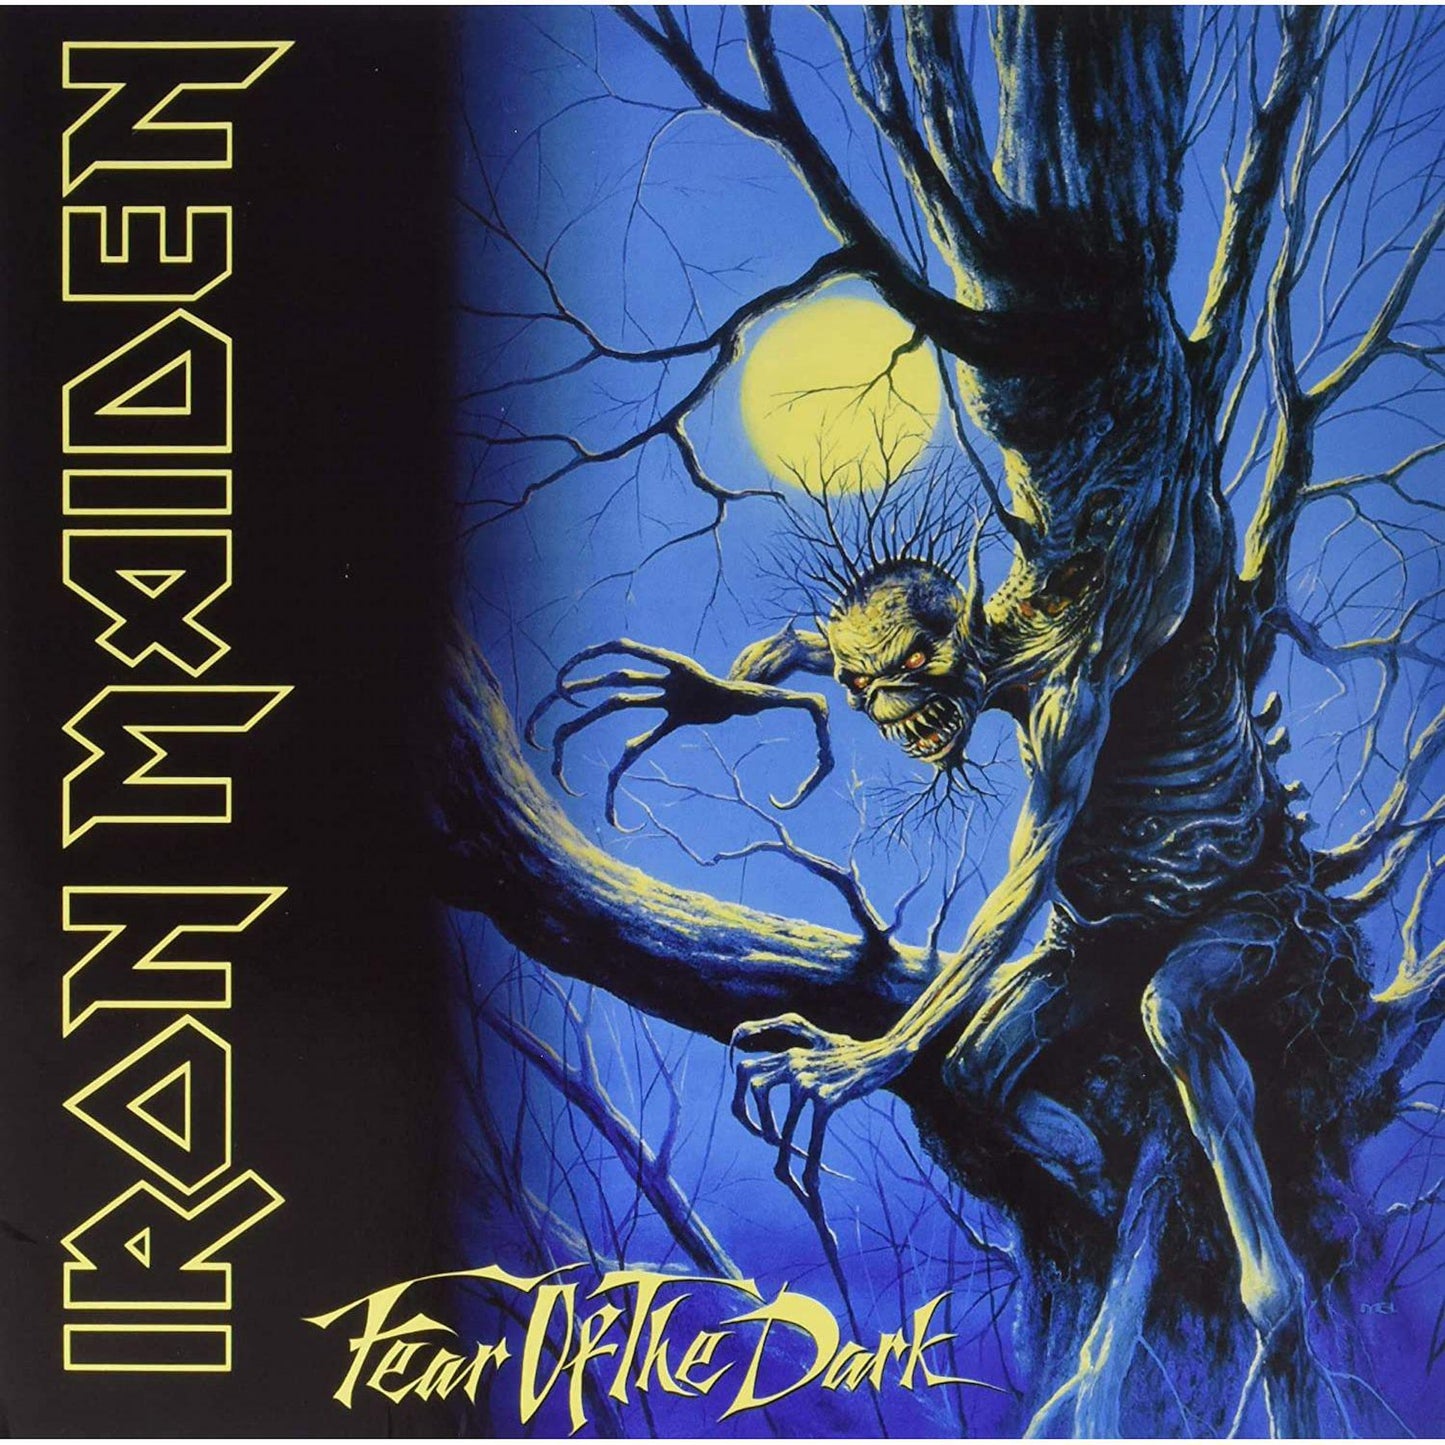 IRON MAIDEN - FEAR OF THE DARK - 2-LP - VINYL LP